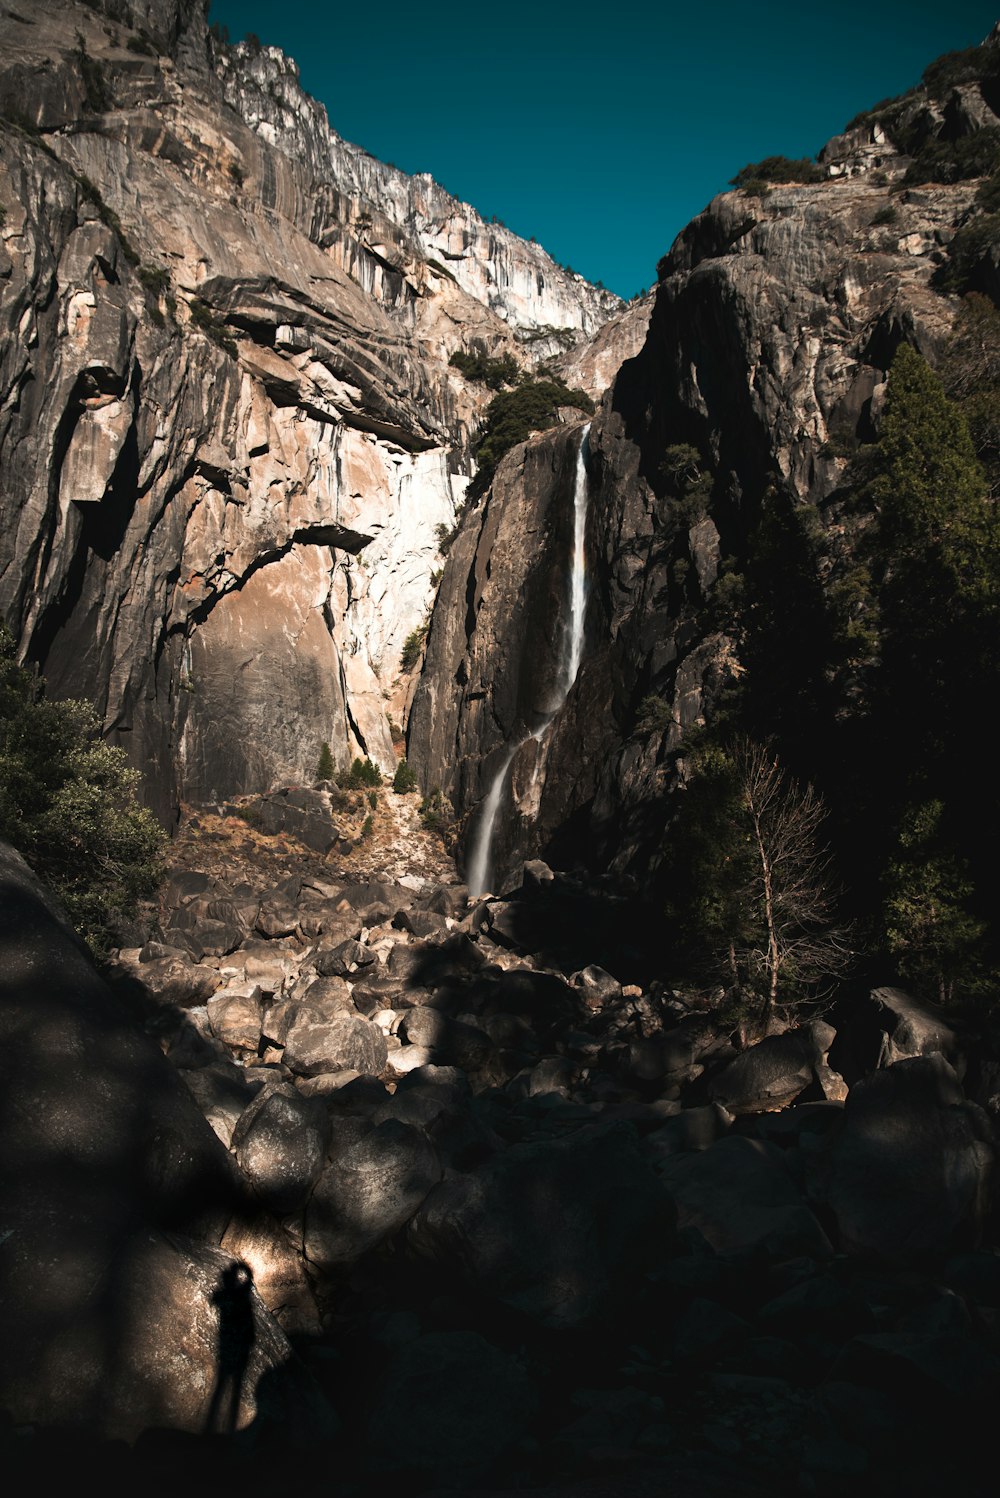 cascades entourées de montagne rocheuse sous ciel bleu pendant la journée